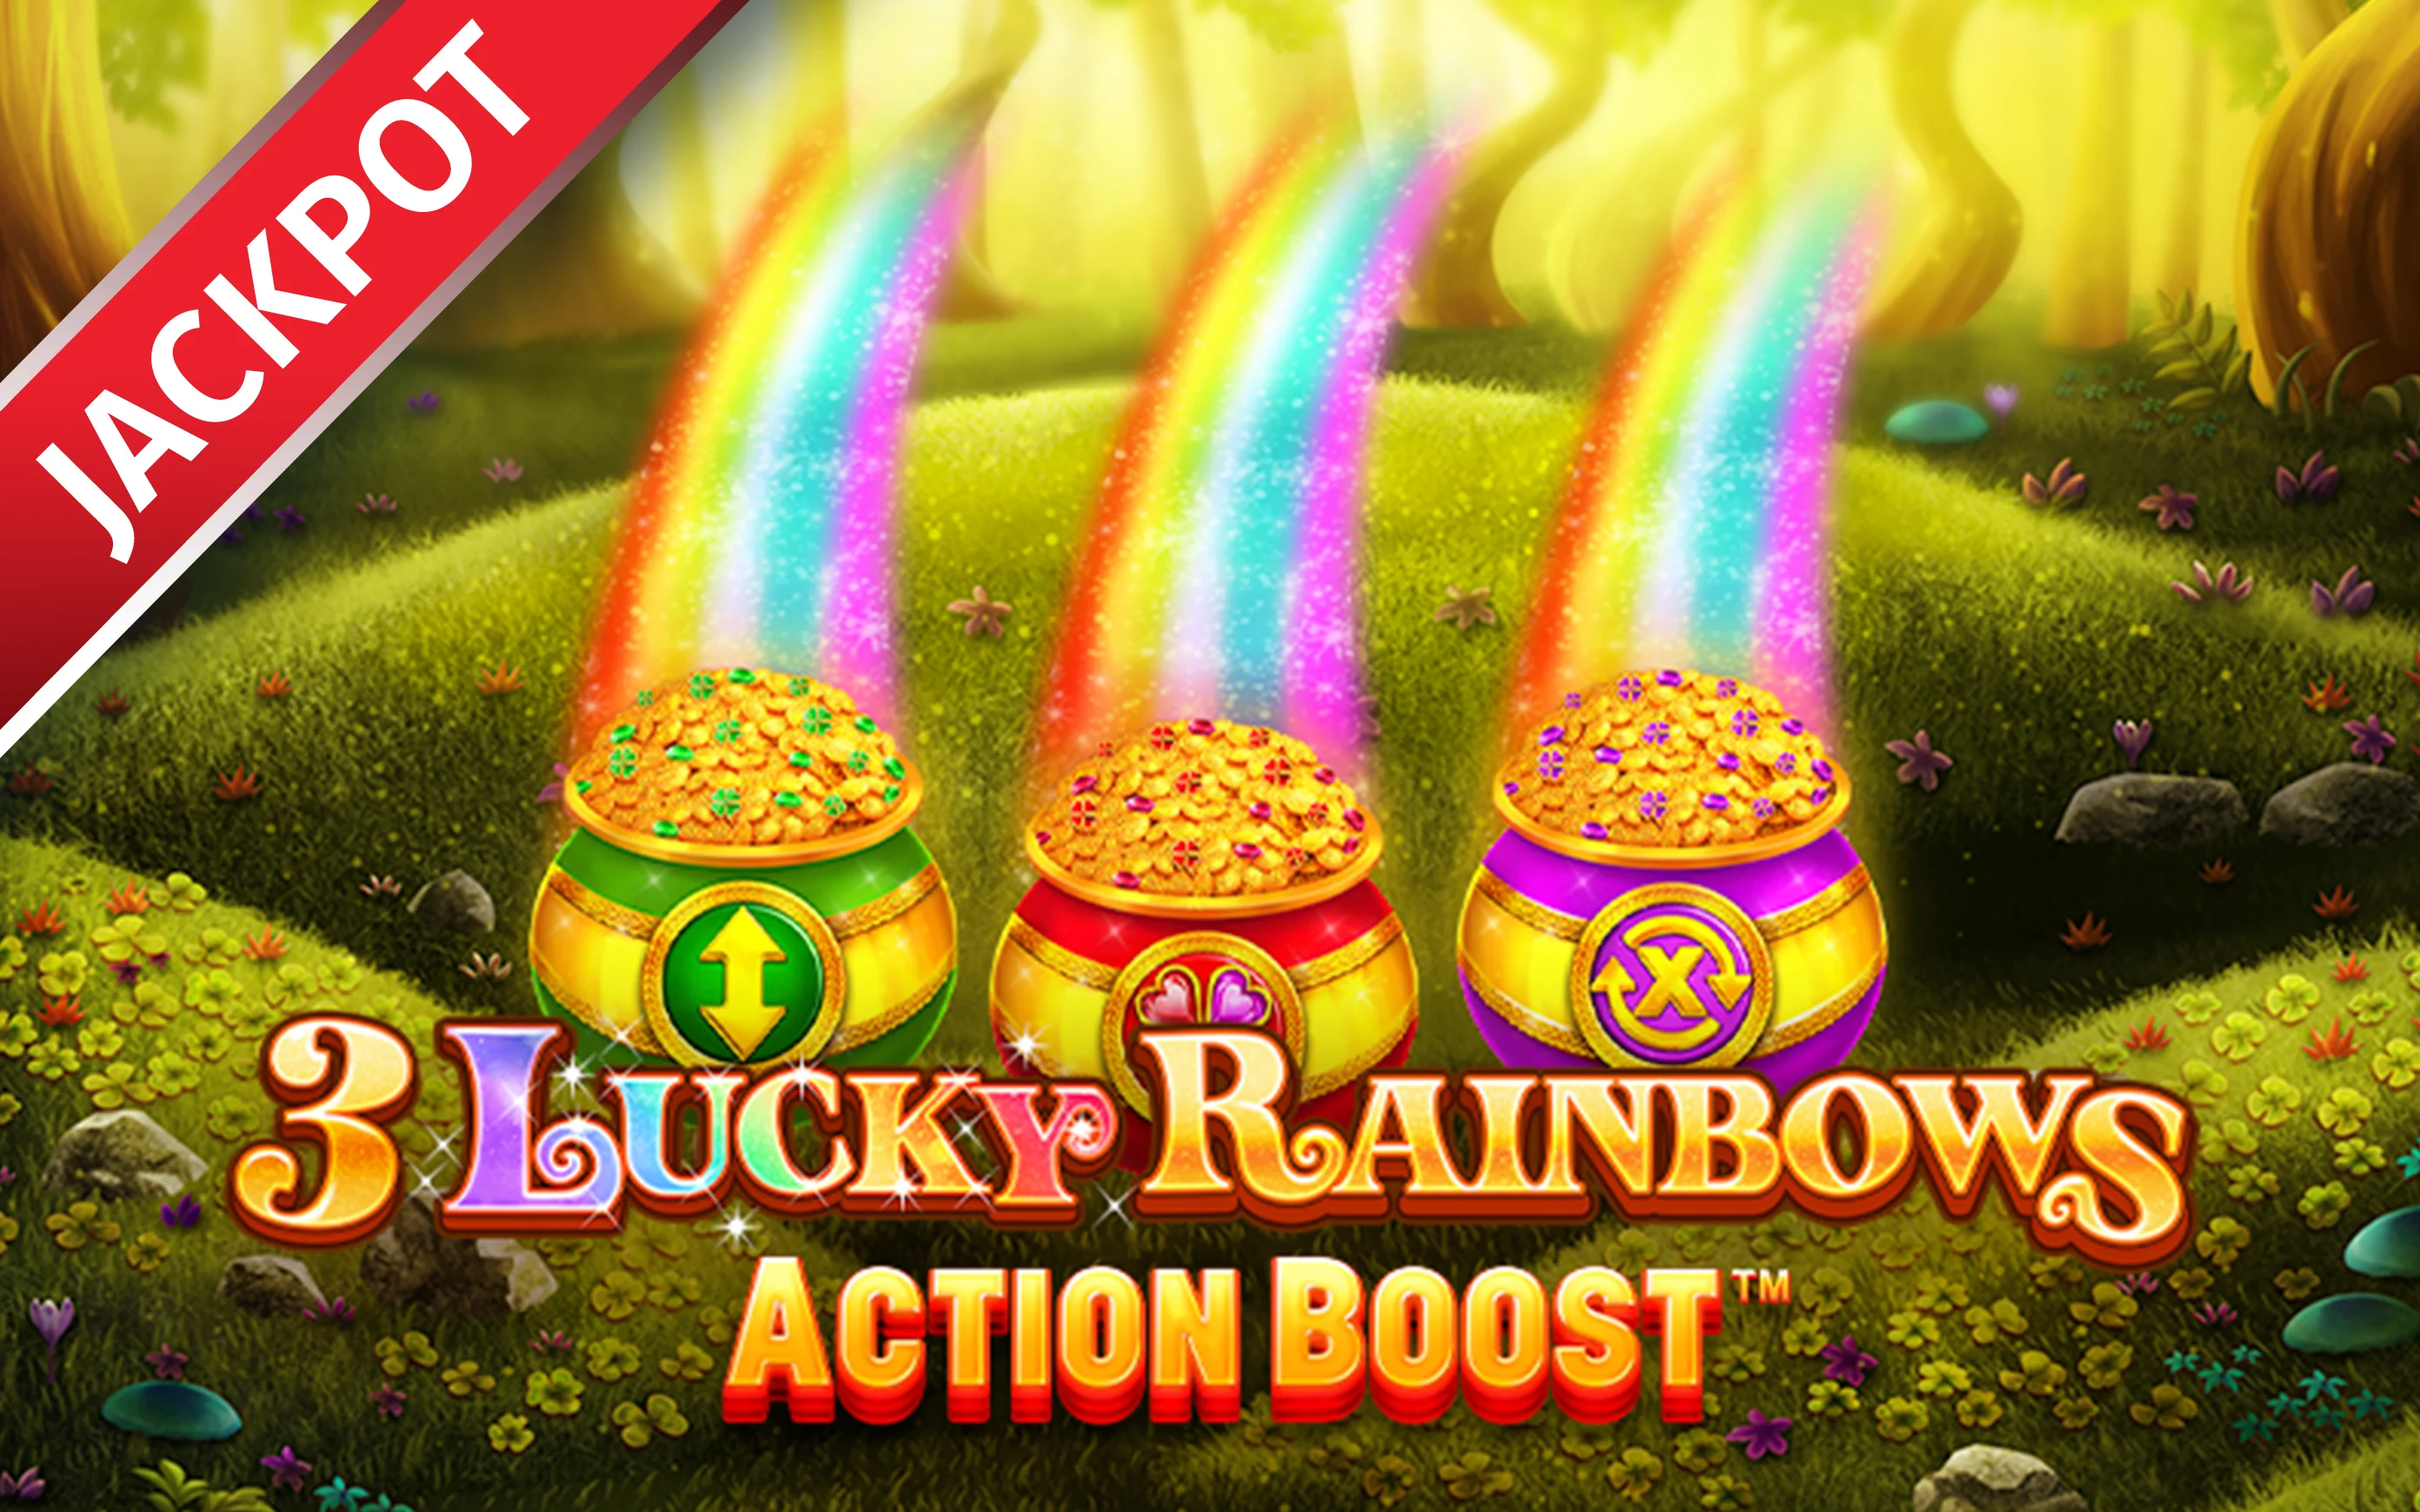 Chơi Action Boost ™ 3 Lucky Rainbows trên sòng bạc trực tuyến Starcasino.be